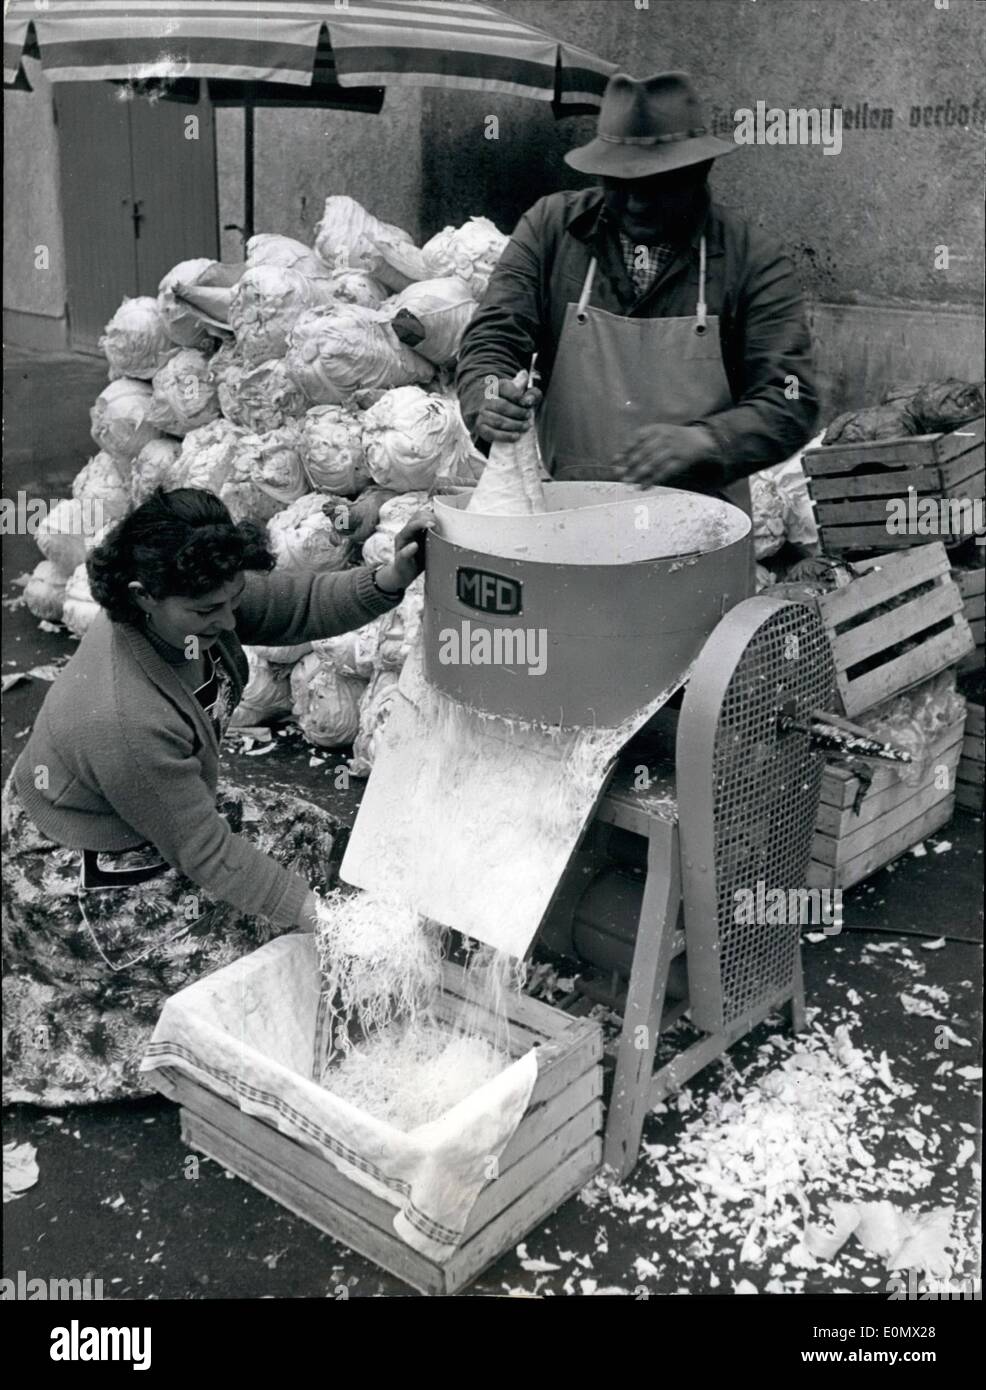 10 octobre 1956 - machines de coupe Chou... sont des machines, des  ménagères allemand obtenu l'utilisation à elle. Coupez le chou à la main  est très unmodern - de sorte que les